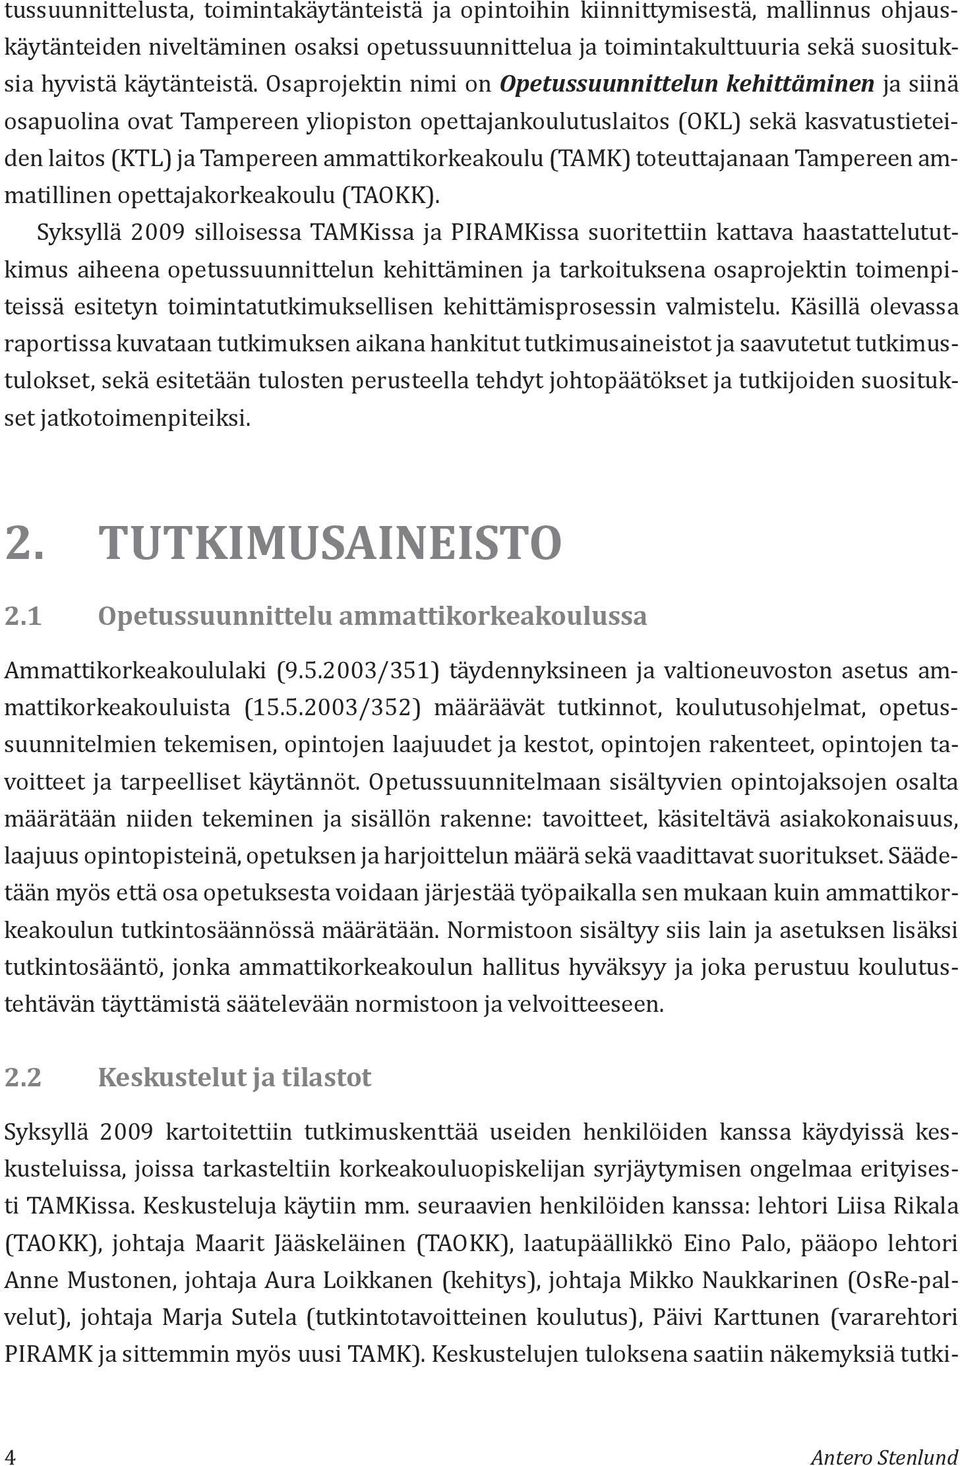 (TAMK) toteuttajanaan Tampereen ammatillinen opettajakorkeakoulu (TAOKK).